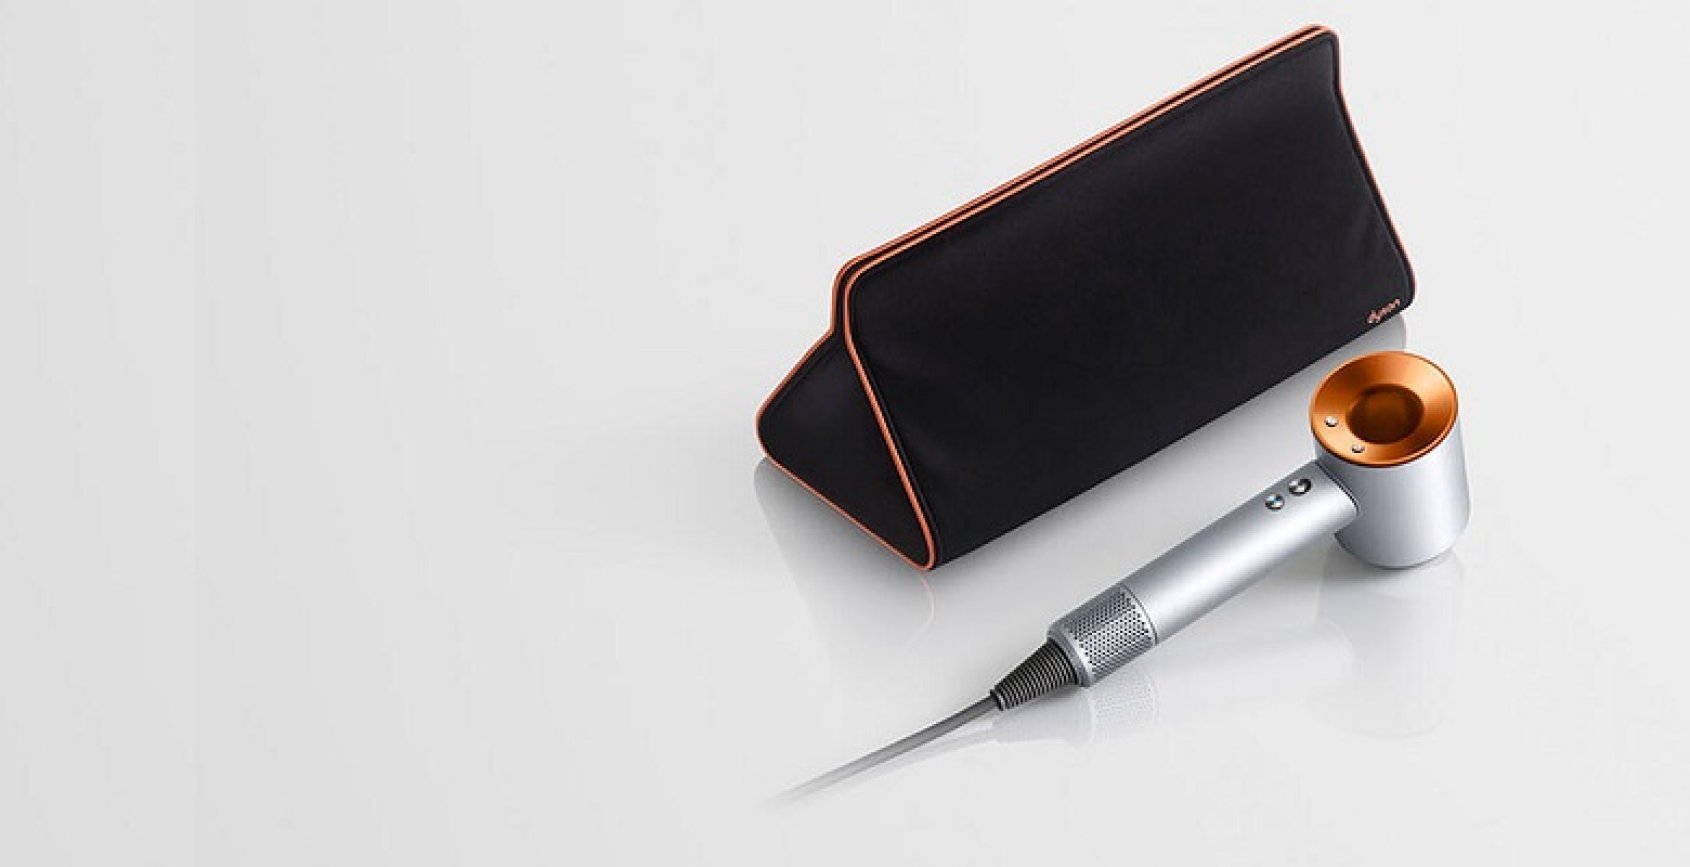 Dyson Supersonic dolazi s copper kožnom putnom torbicom za jednostavniji prijenos vašeg omiljenog sušila za kosu.